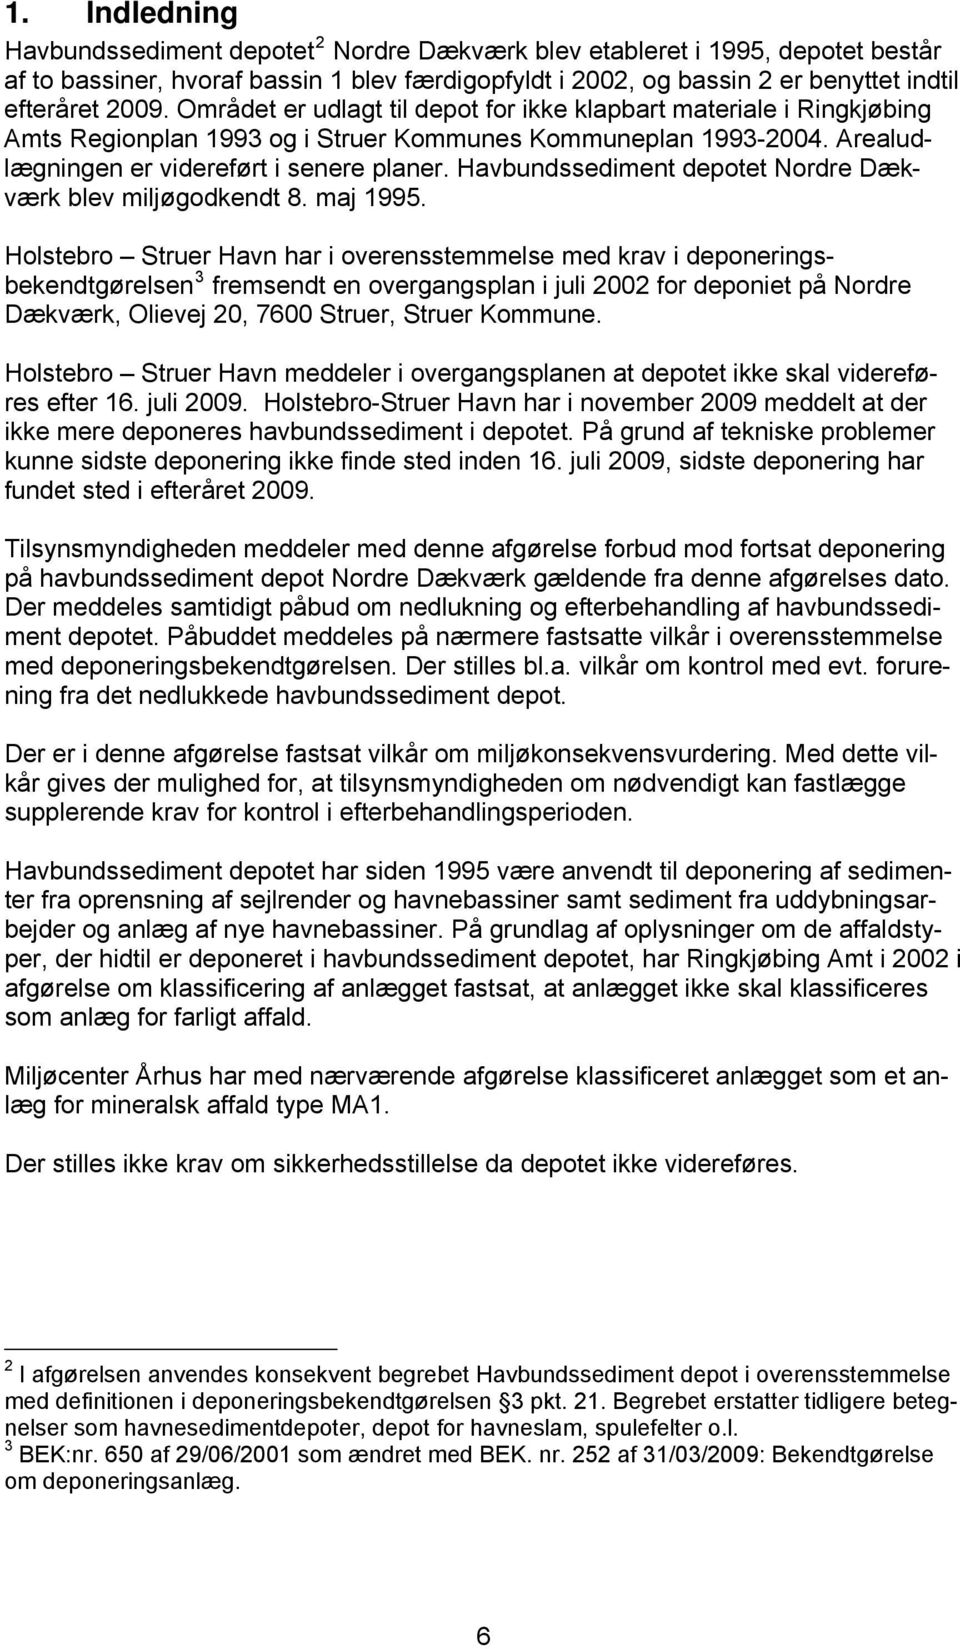 Havbundssediment depotet Nordre Dækværk blev miljøgodkendt 8. maj 1995.